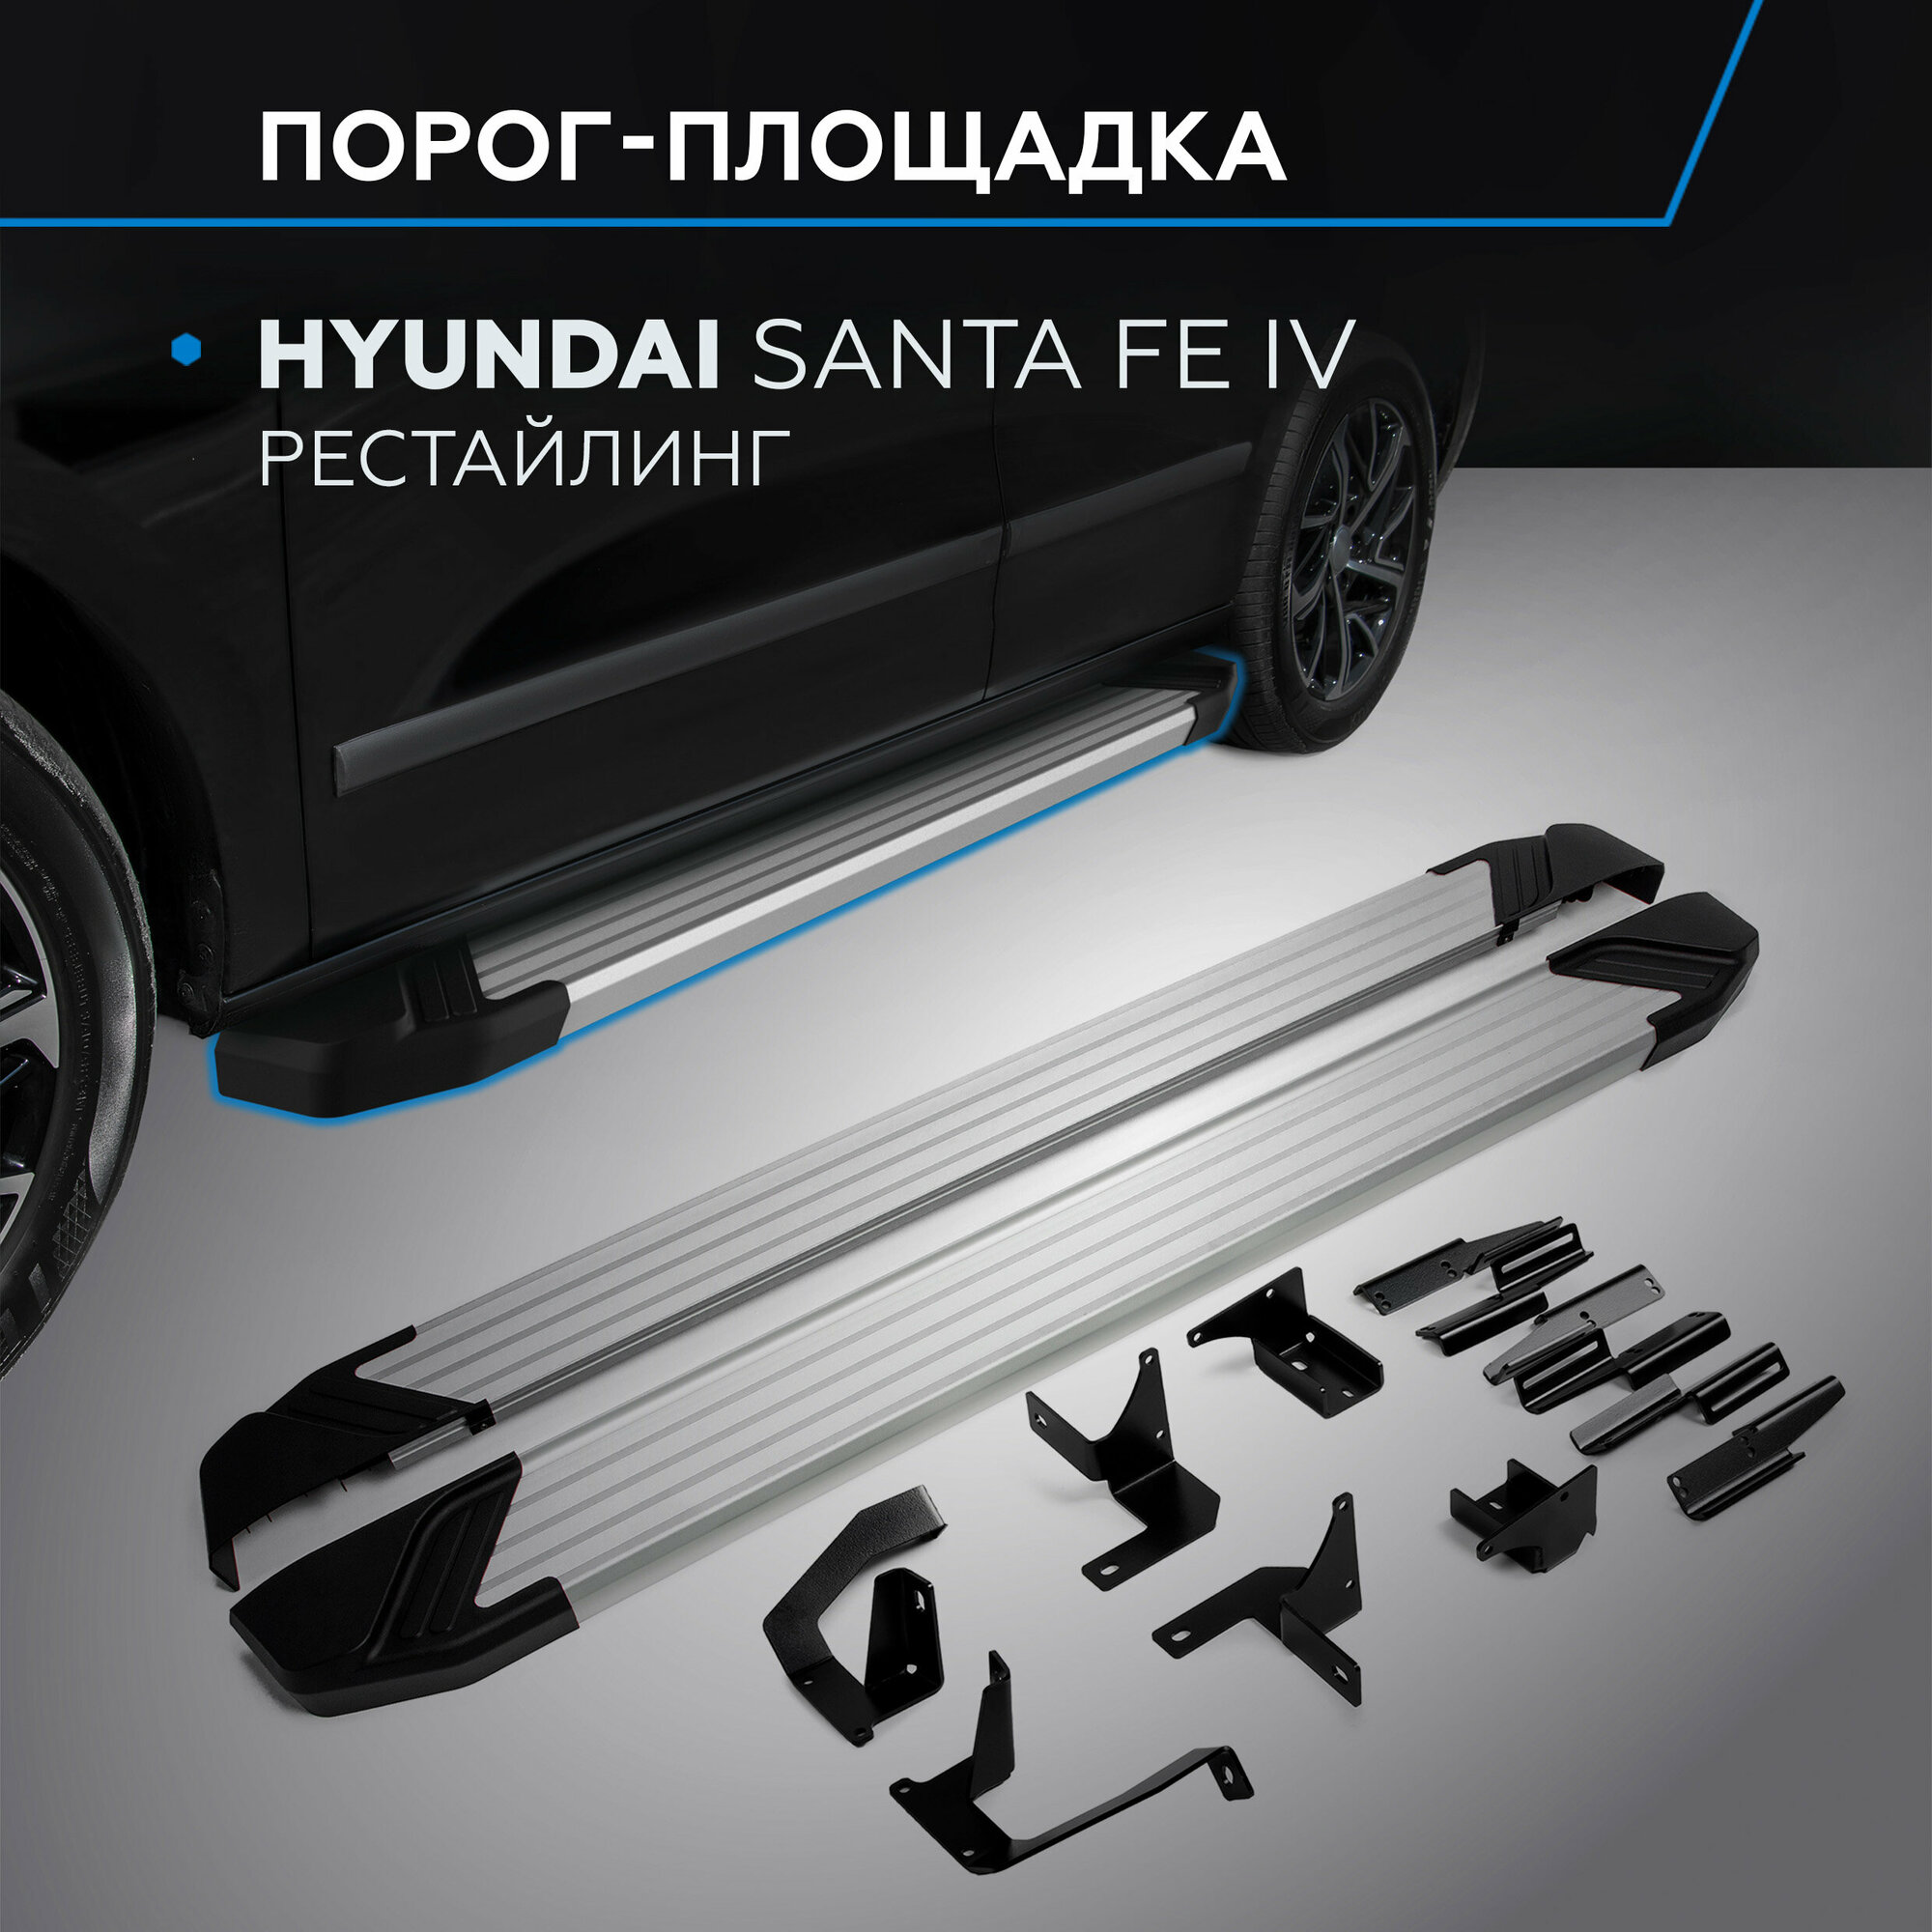 Пороги на автомобиль "Silver" Rival для Hyundai Santa Fe IV рестайлинг 2021-н. в 180 см 2 шт алюминий F180AL.2312.1